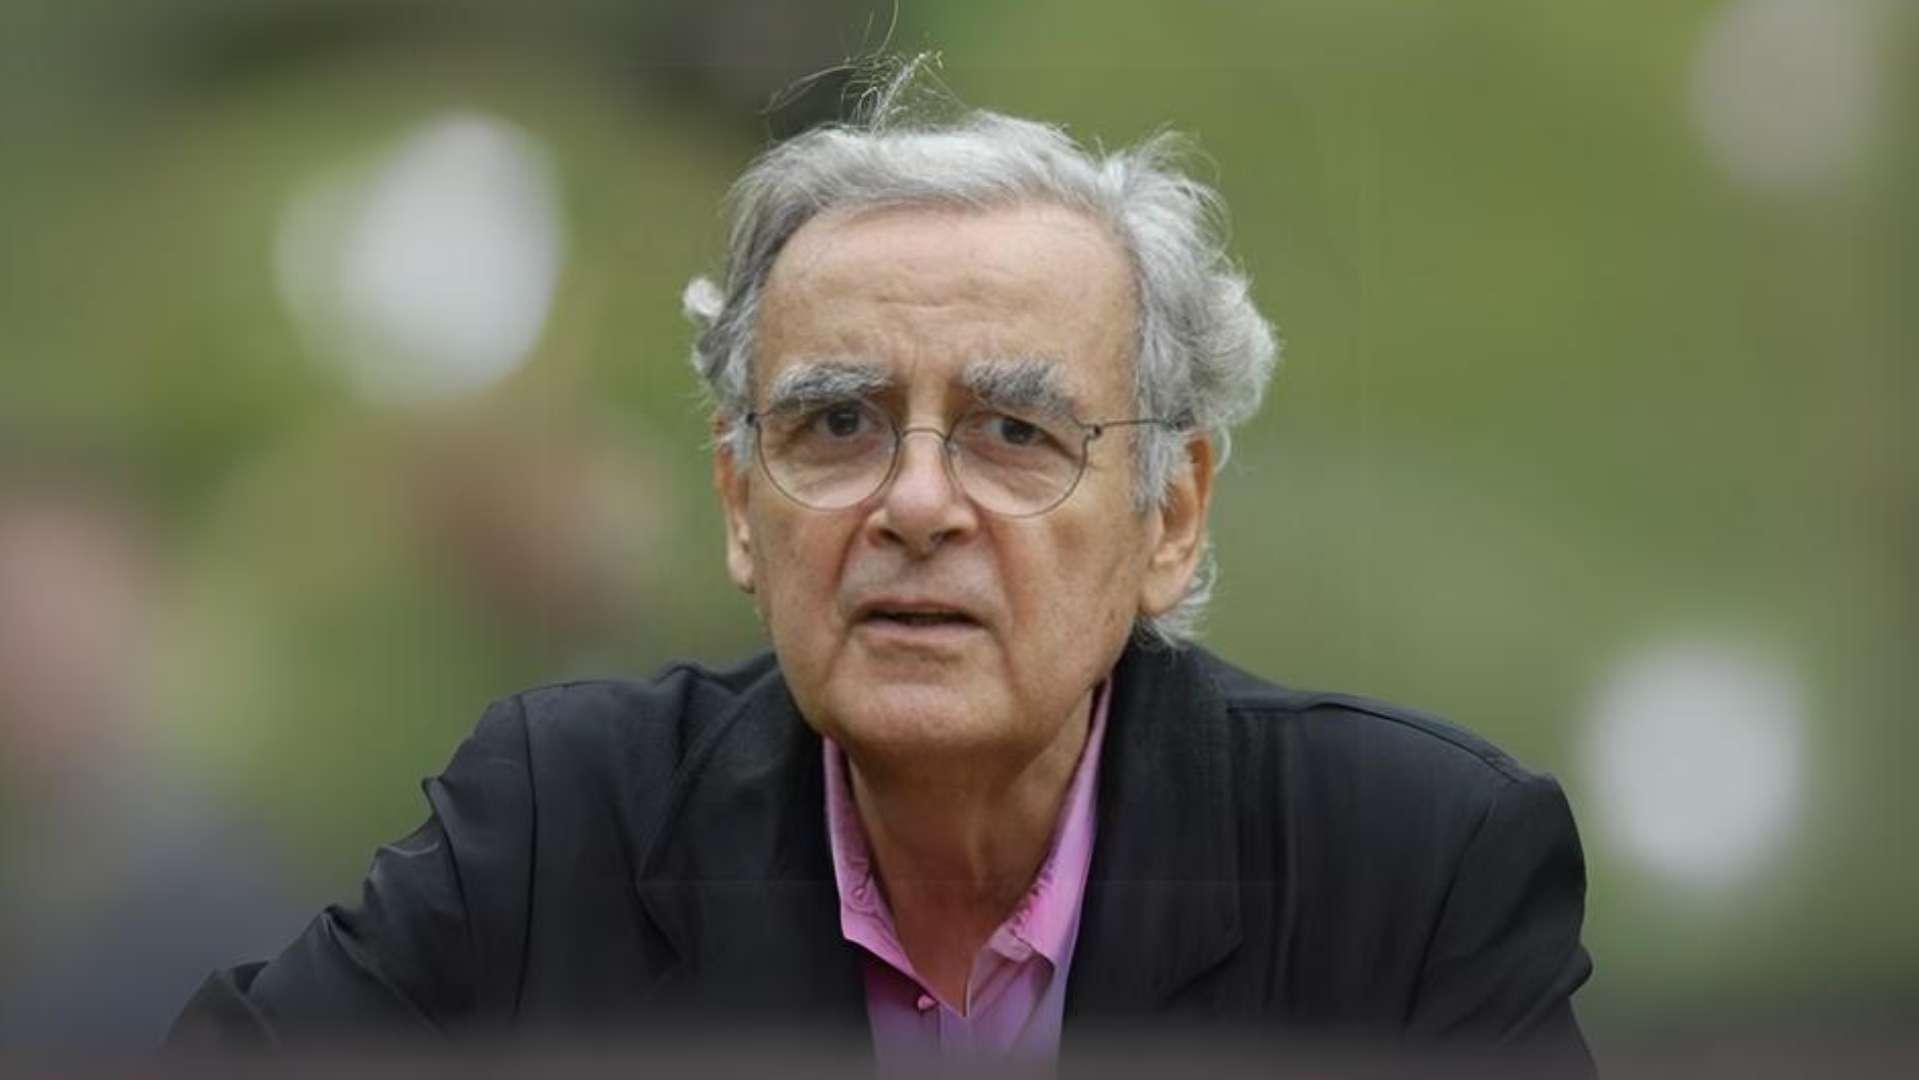  Bernard Pivot,  présentateur et écrivain est mort à l'âge de 89 ans